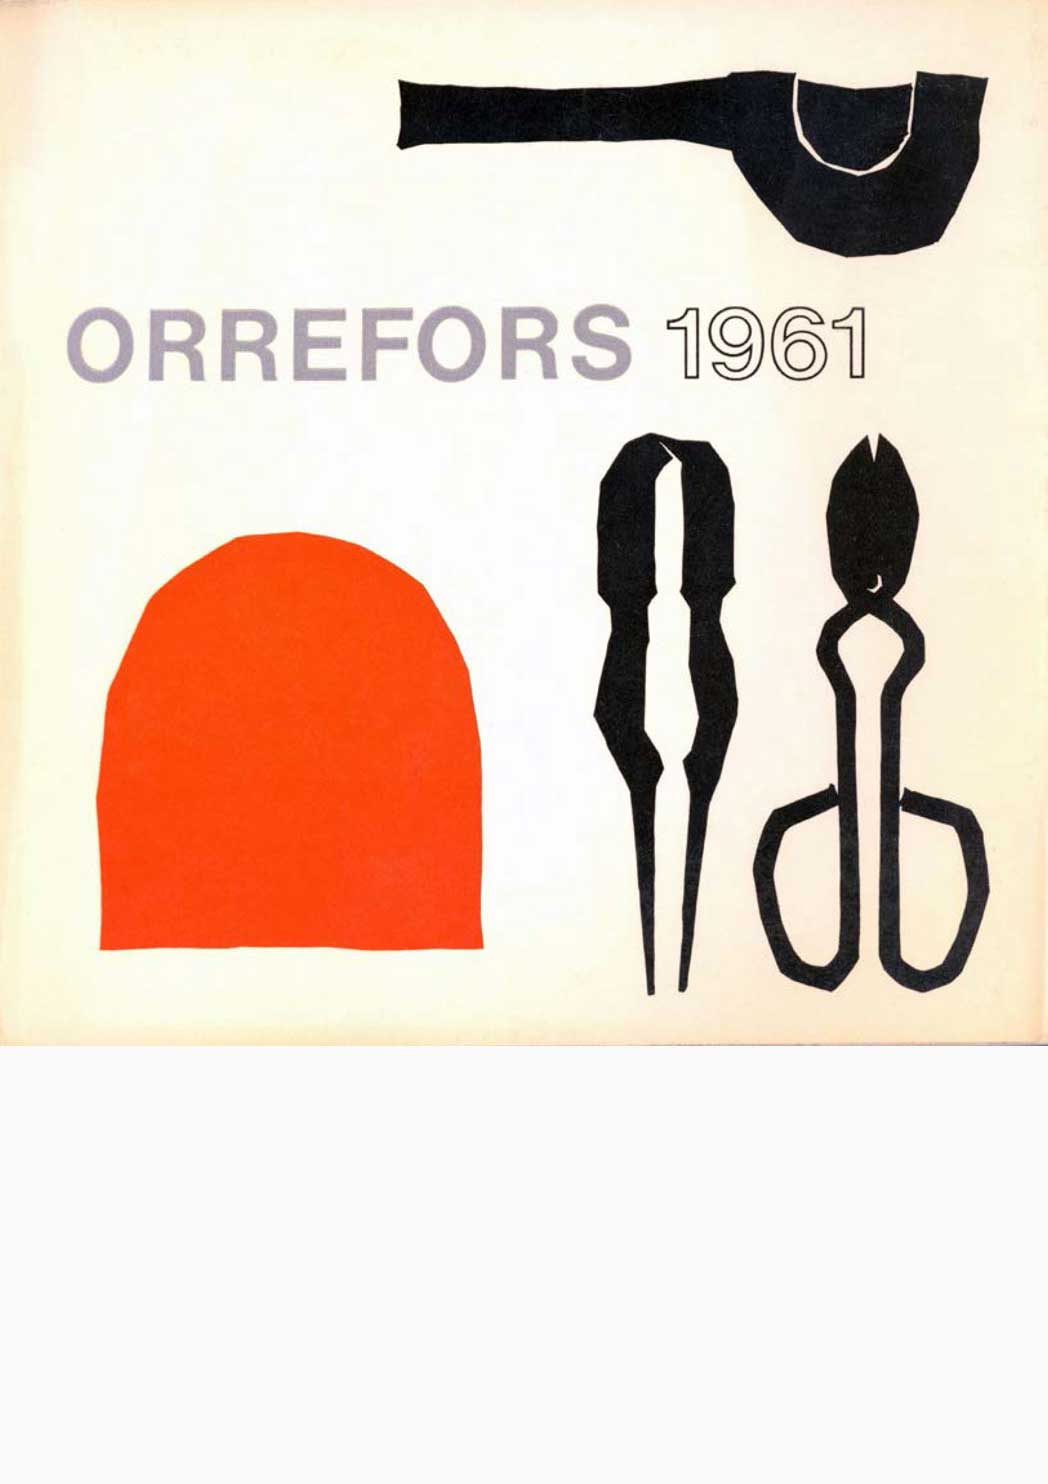 ORREFORS-1961-Utstallningskatalog-Lunds-konsthall@2x